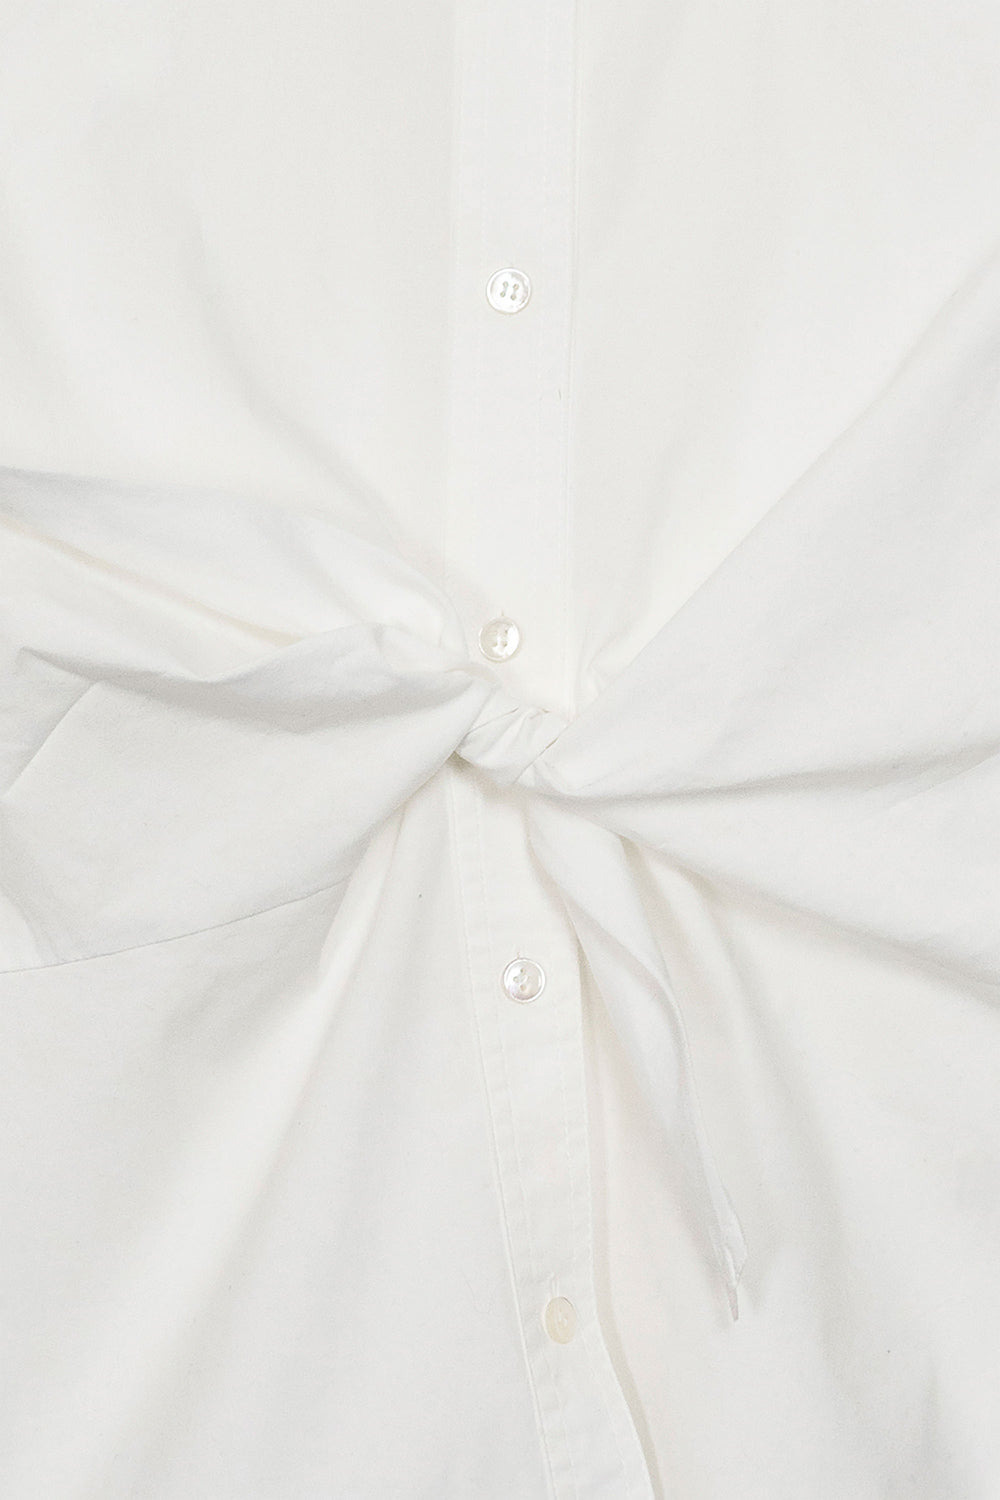 Anne Klein Vintage White Shirt Front Detail